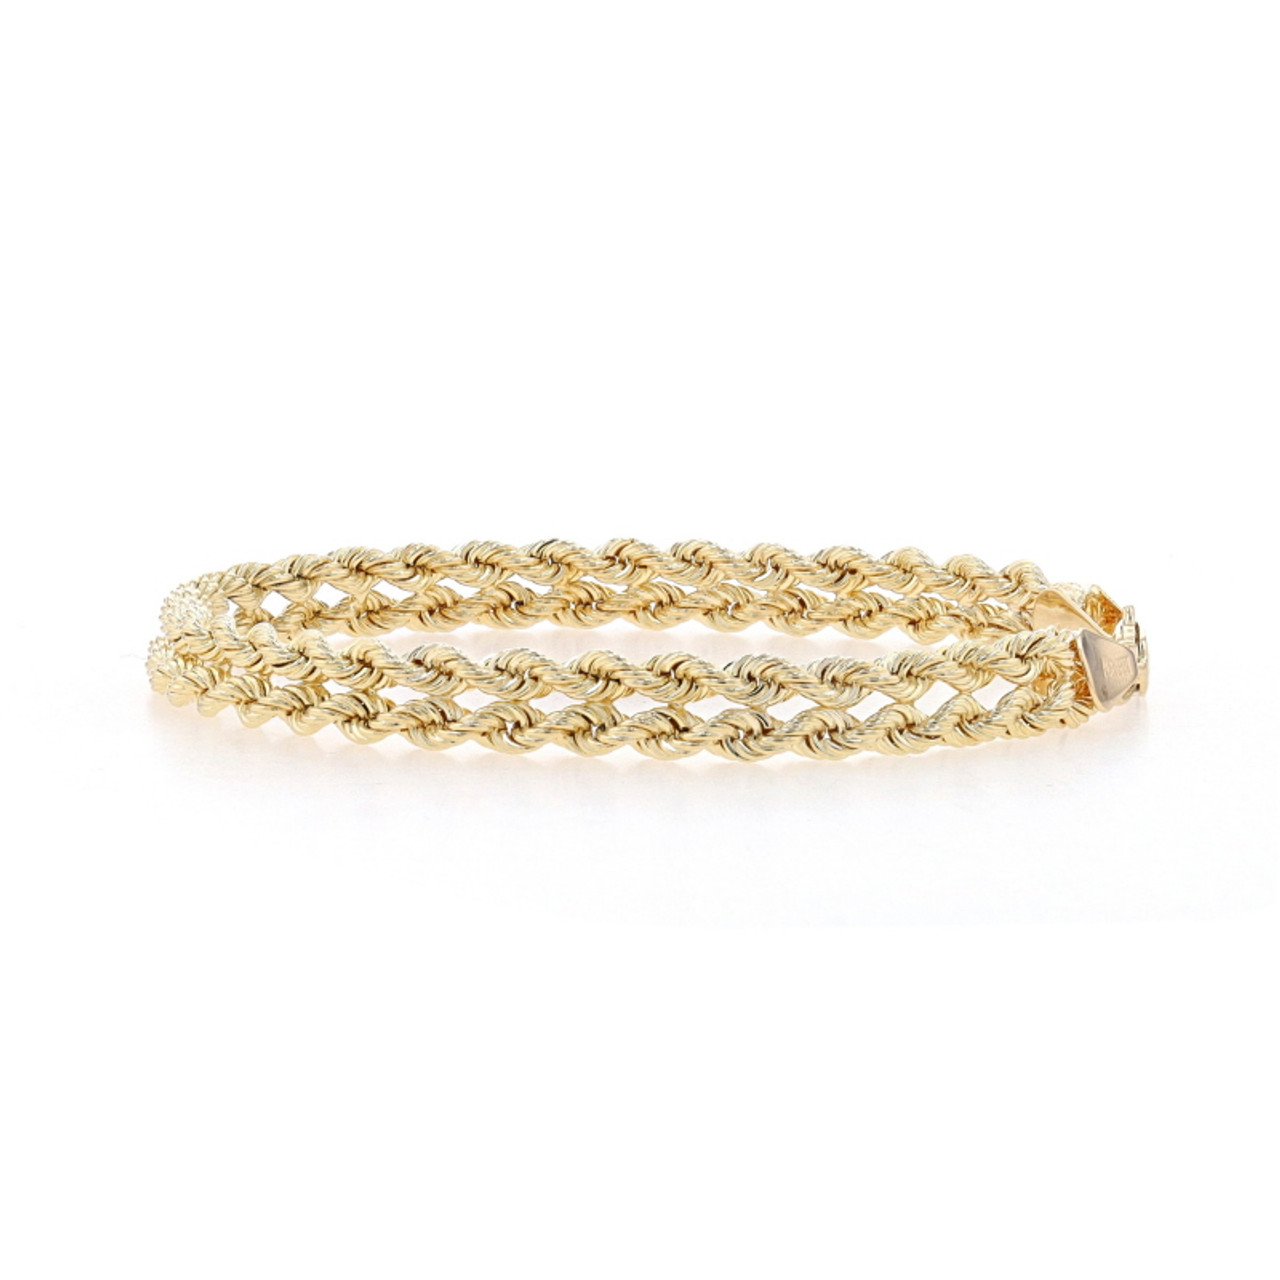 Rope Chain Bracelet 14K White Gold 8 Length